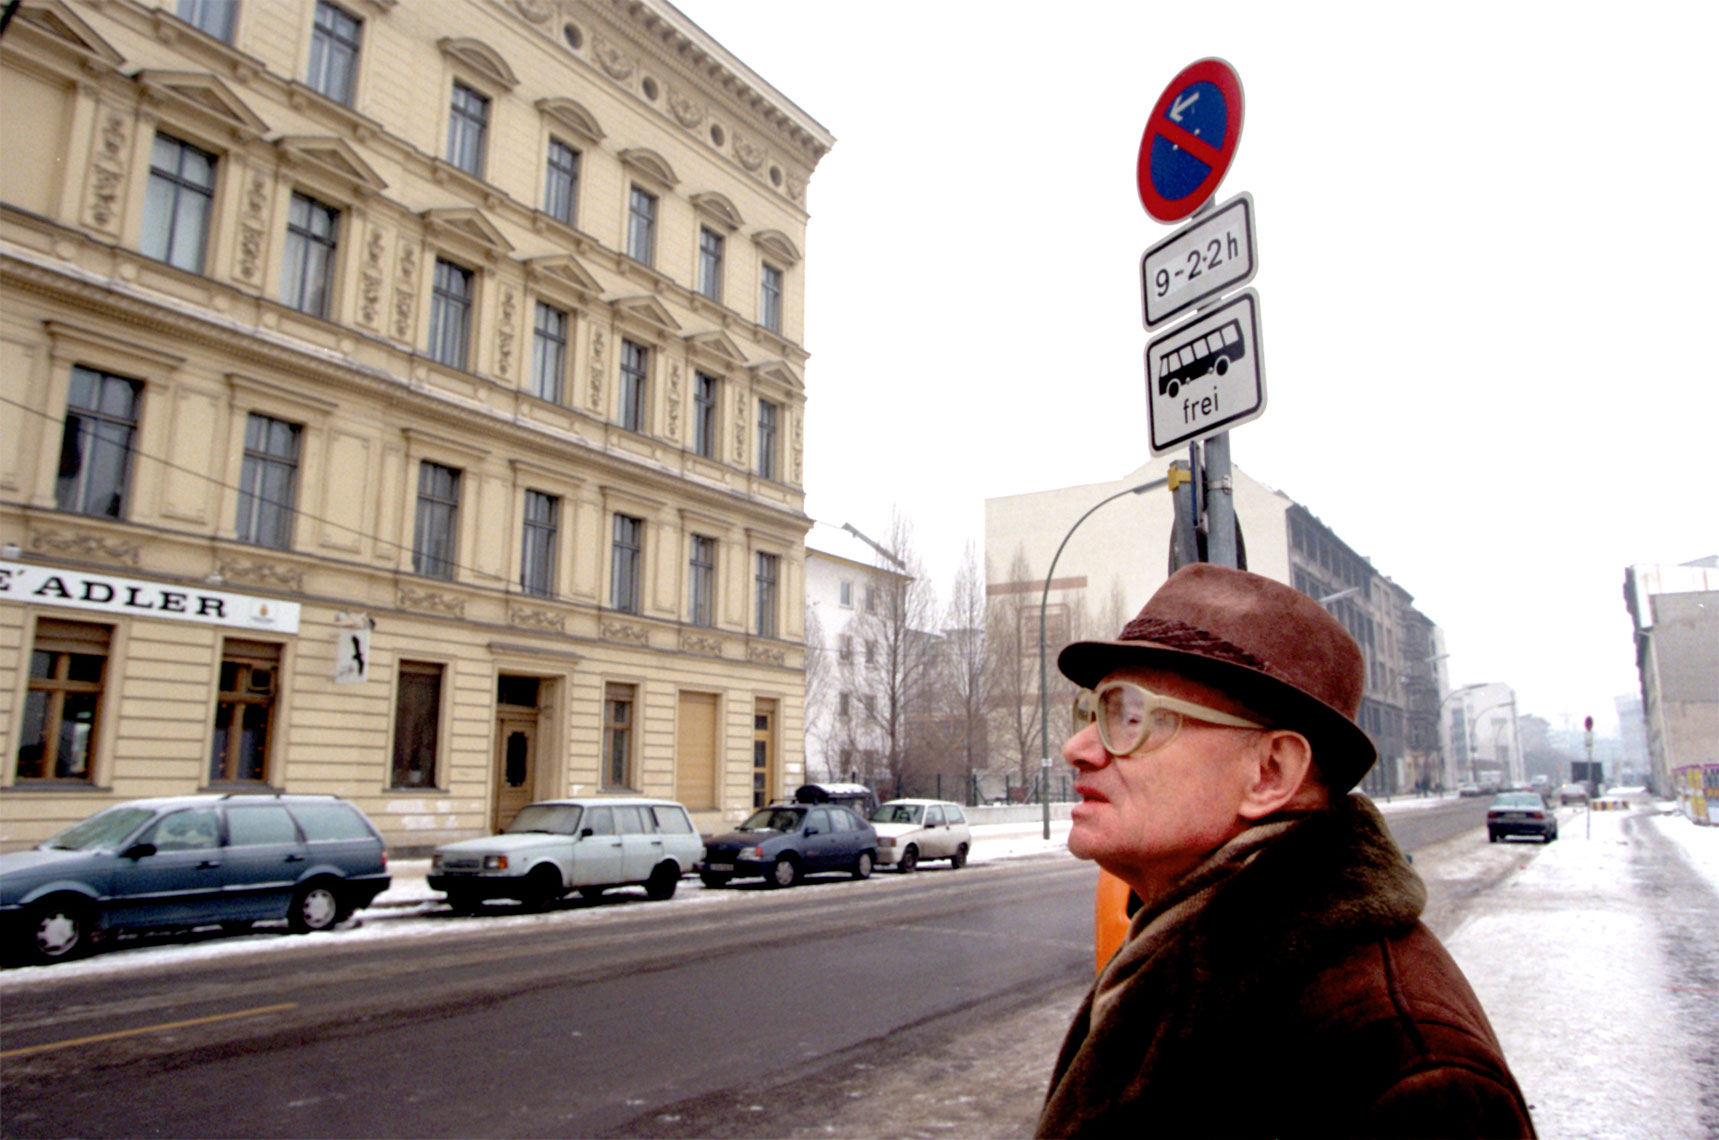 German-man-at-street-corner